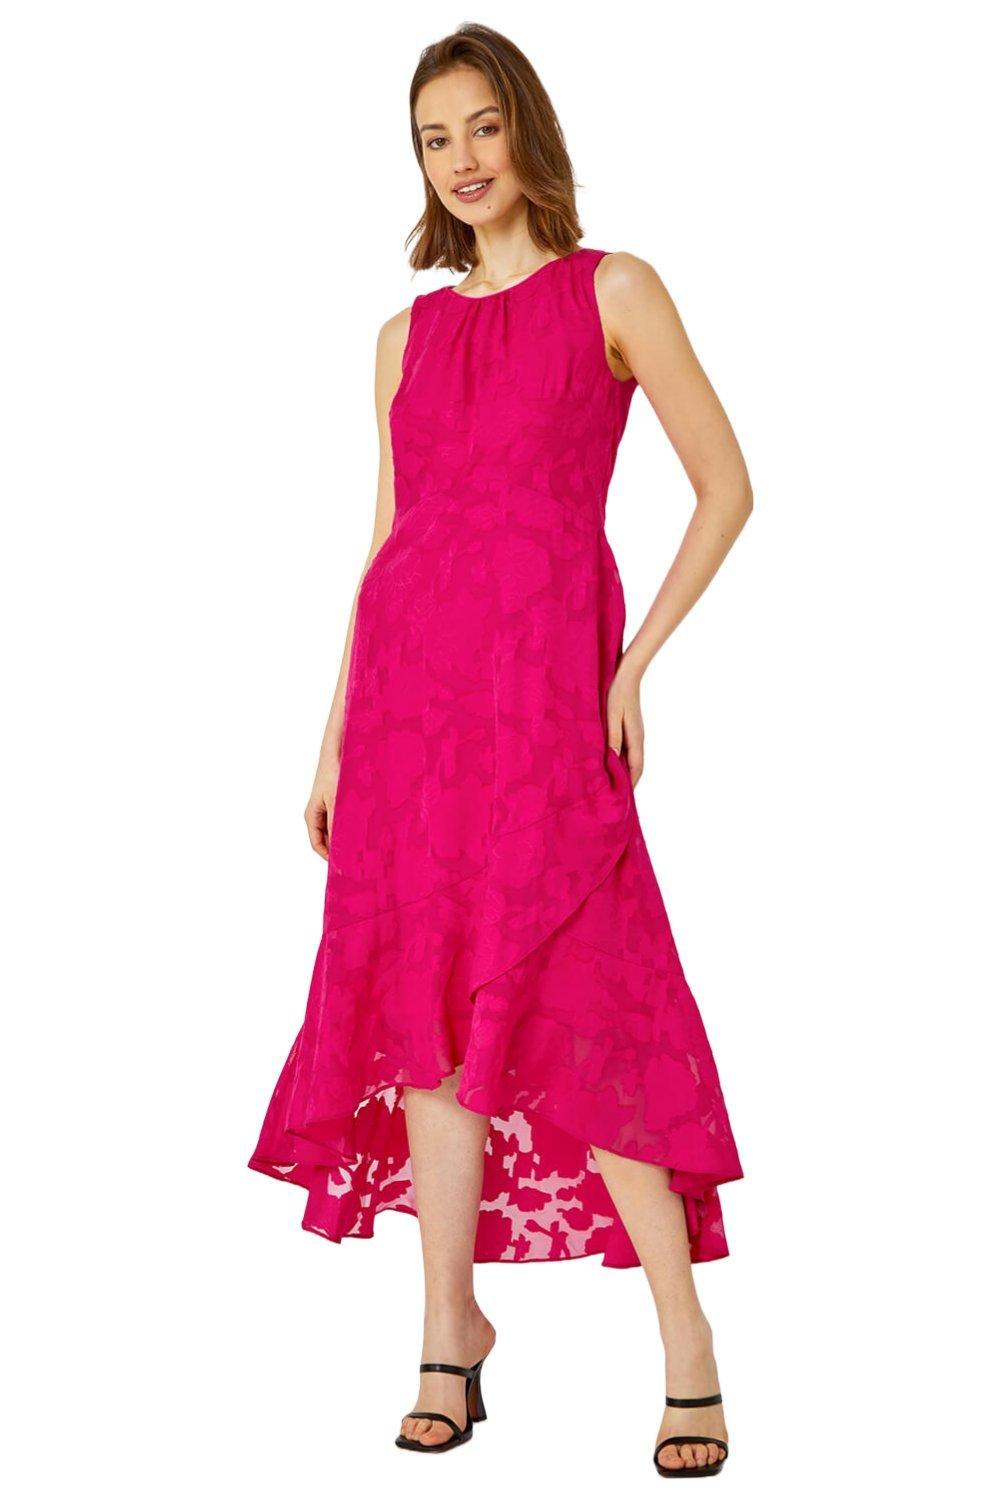 Жаккардовое платье миди без рукавов с глубоким подолом Roman, розовый женское жаккардовое платье без рукавов элегантное праздничное белое облегающее платье с квадратным вырезом бантом на бретелях и высокой